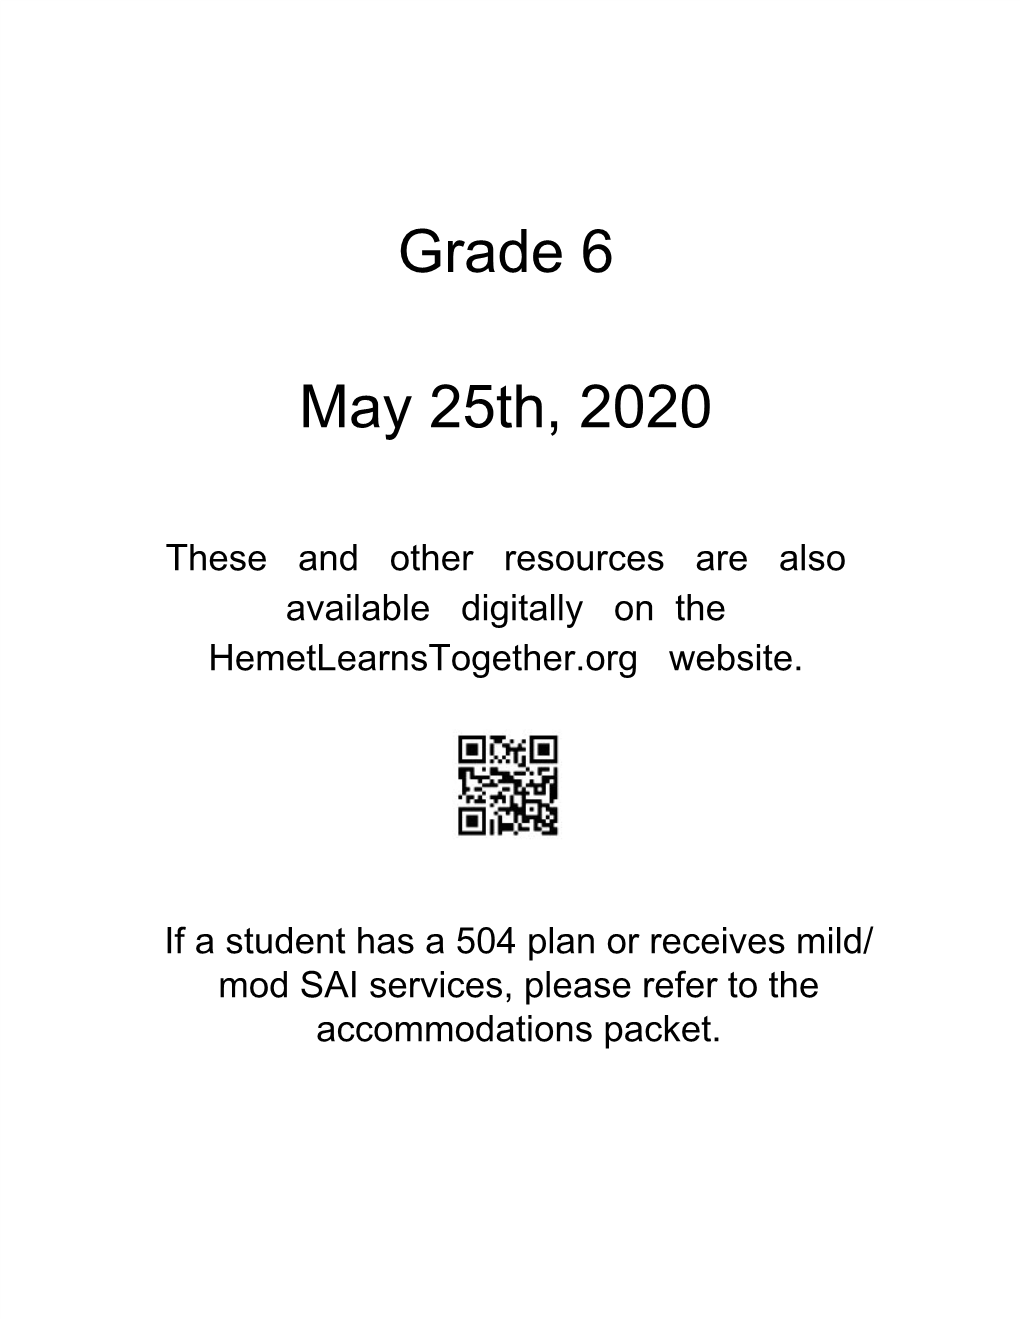 Grade 6 May 25Th, 2020